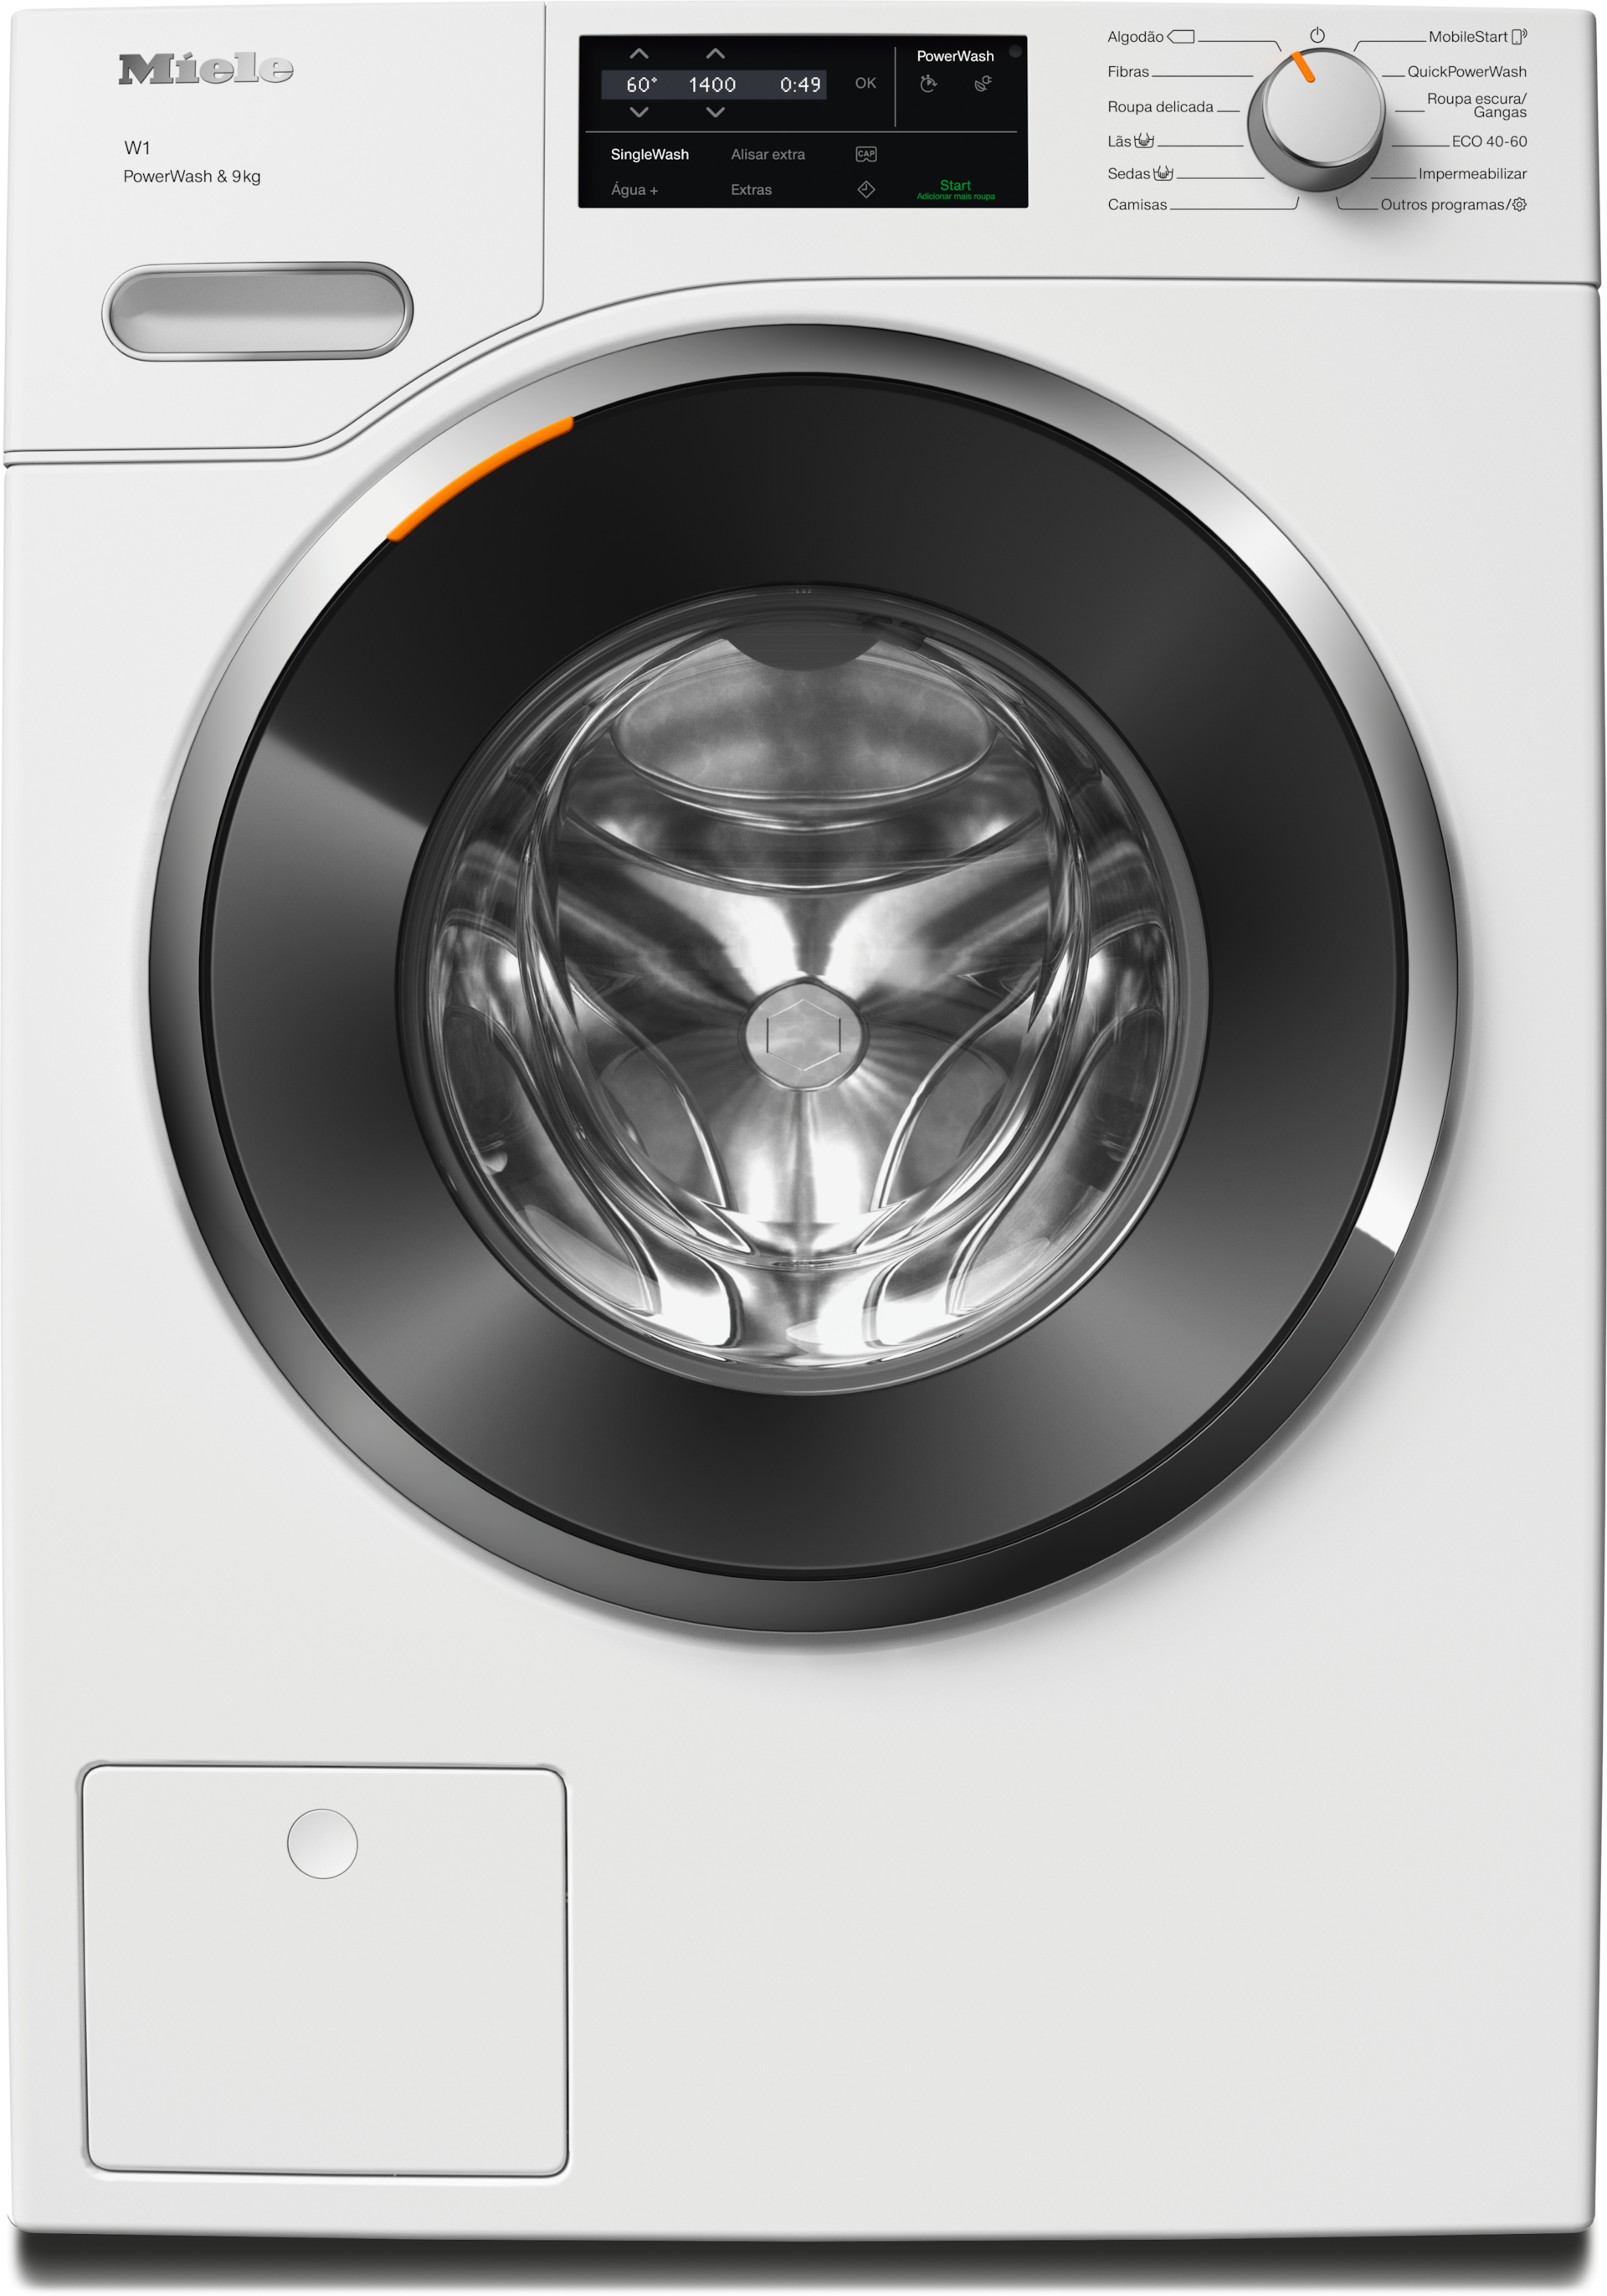 Máquinas de lavar roupa - WWG360 WCS PWash&9kg Branco lótus - 1